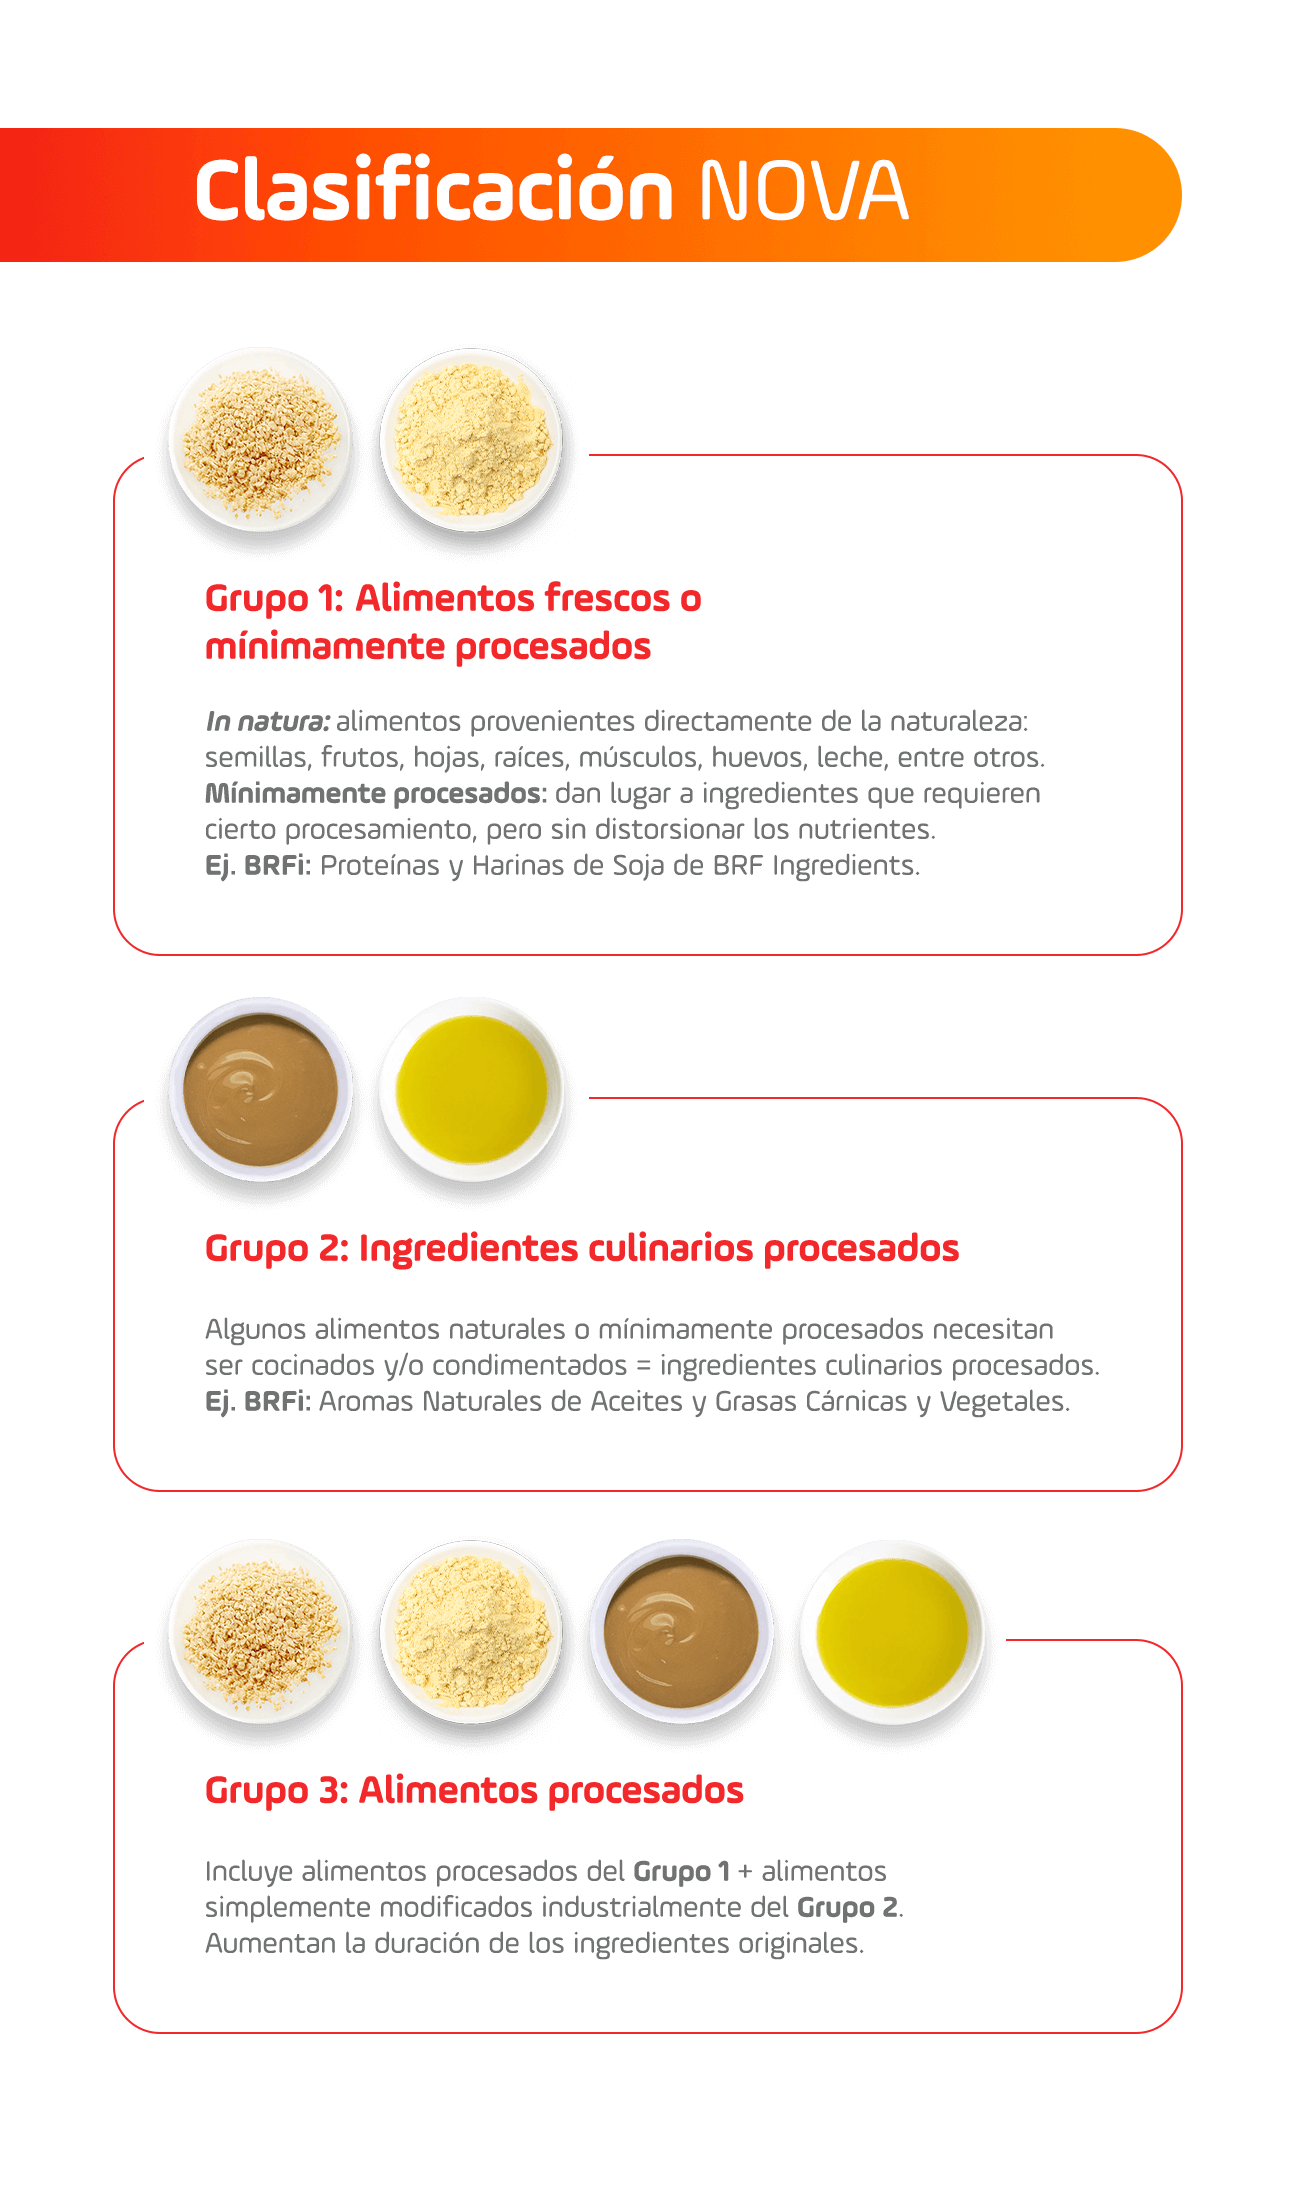 Clasificacíon Nova - Grupo 1: Alimentos Frescos - Grupo 2: Ingredientes culinarios procesados - Grupo 3: Alimentos procesados